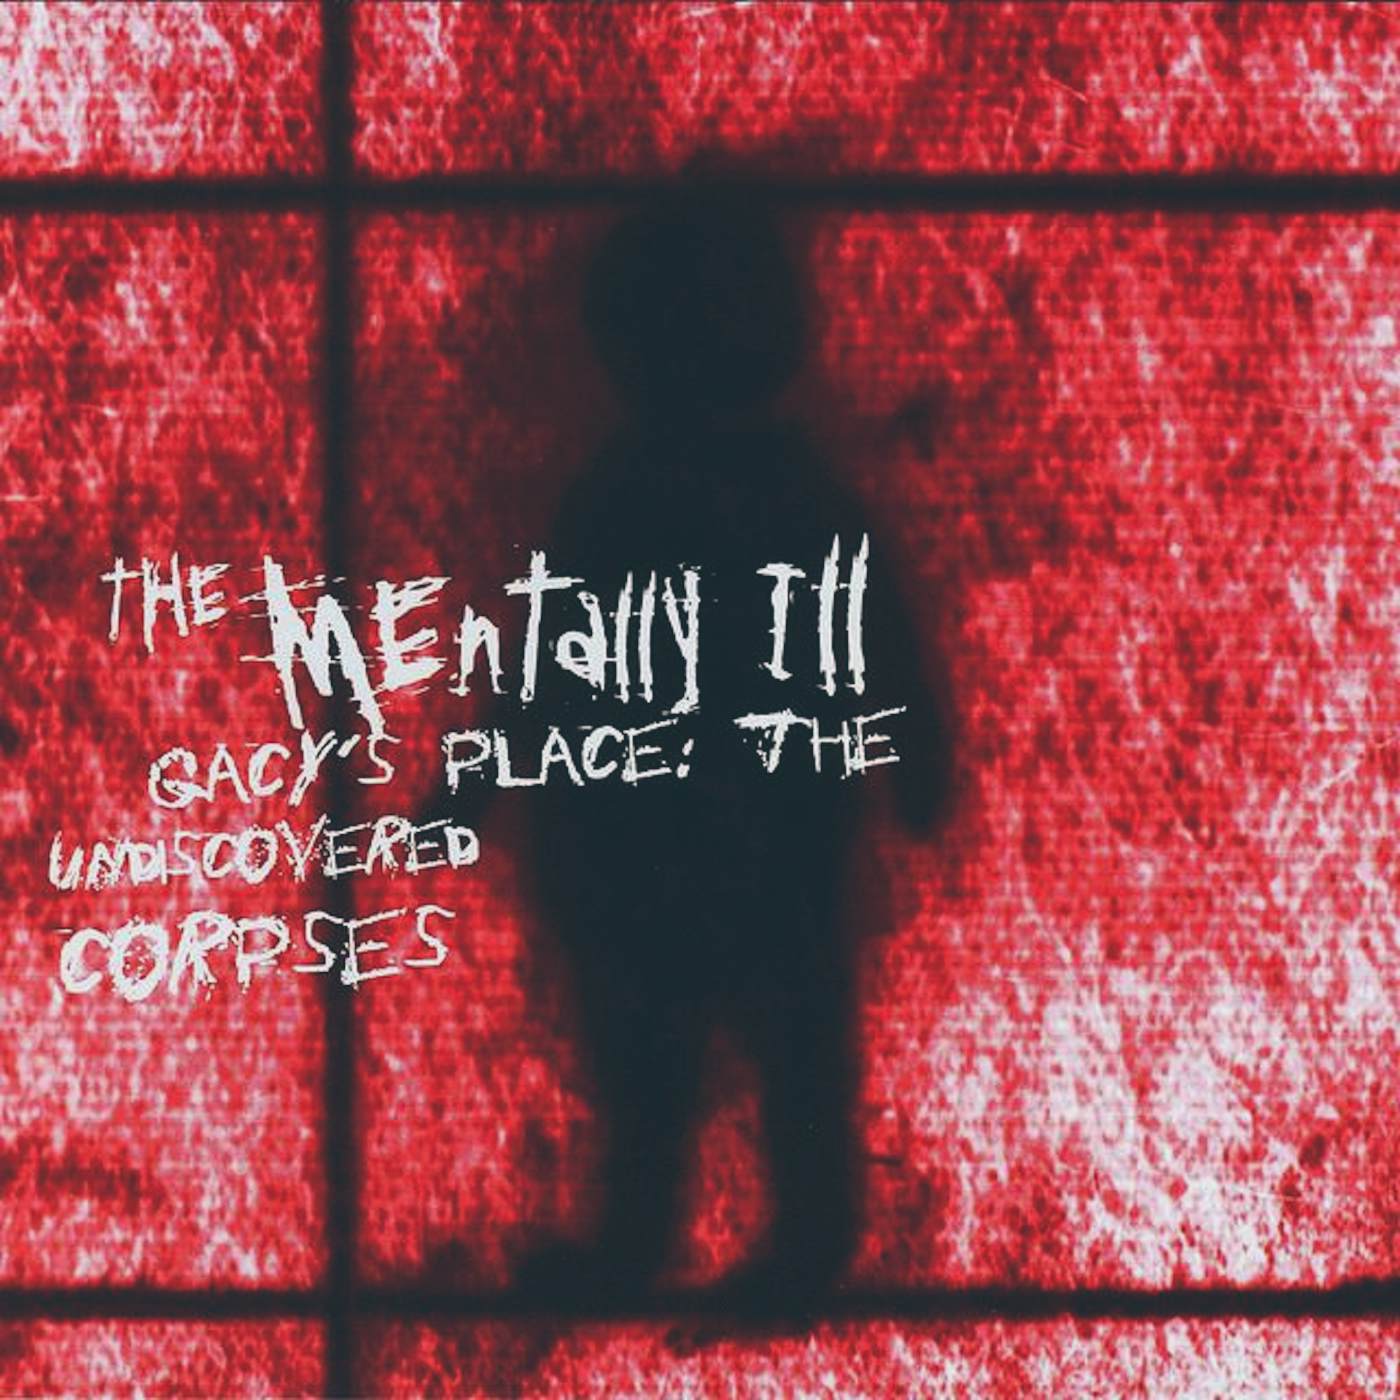 The Mentally Ill